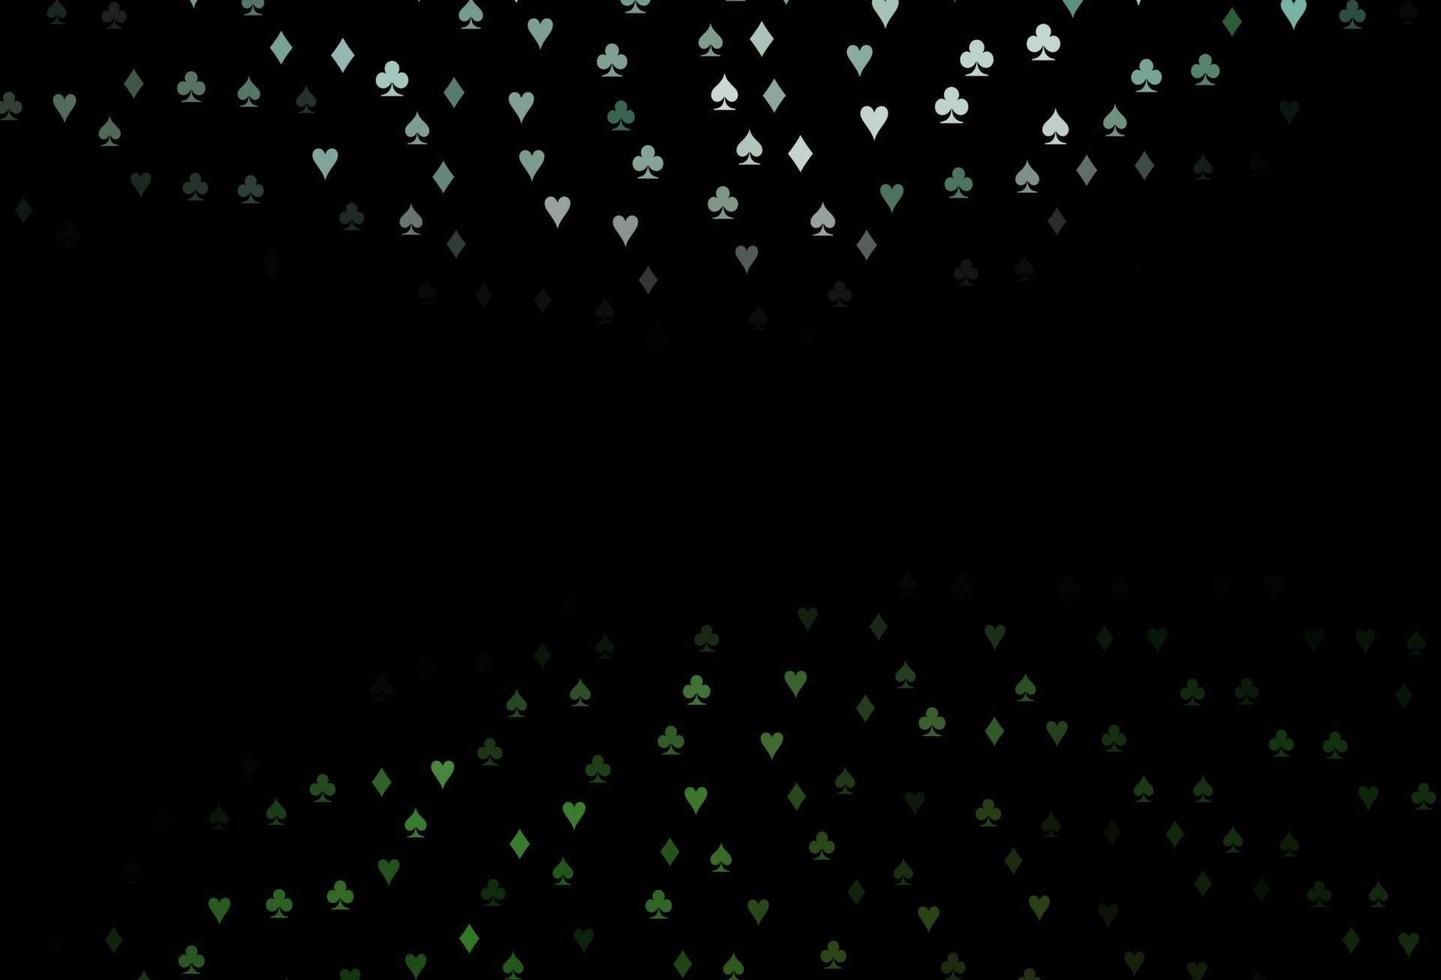 copertina vettoriale verde scuro con simboli di gioco d'azzardo.